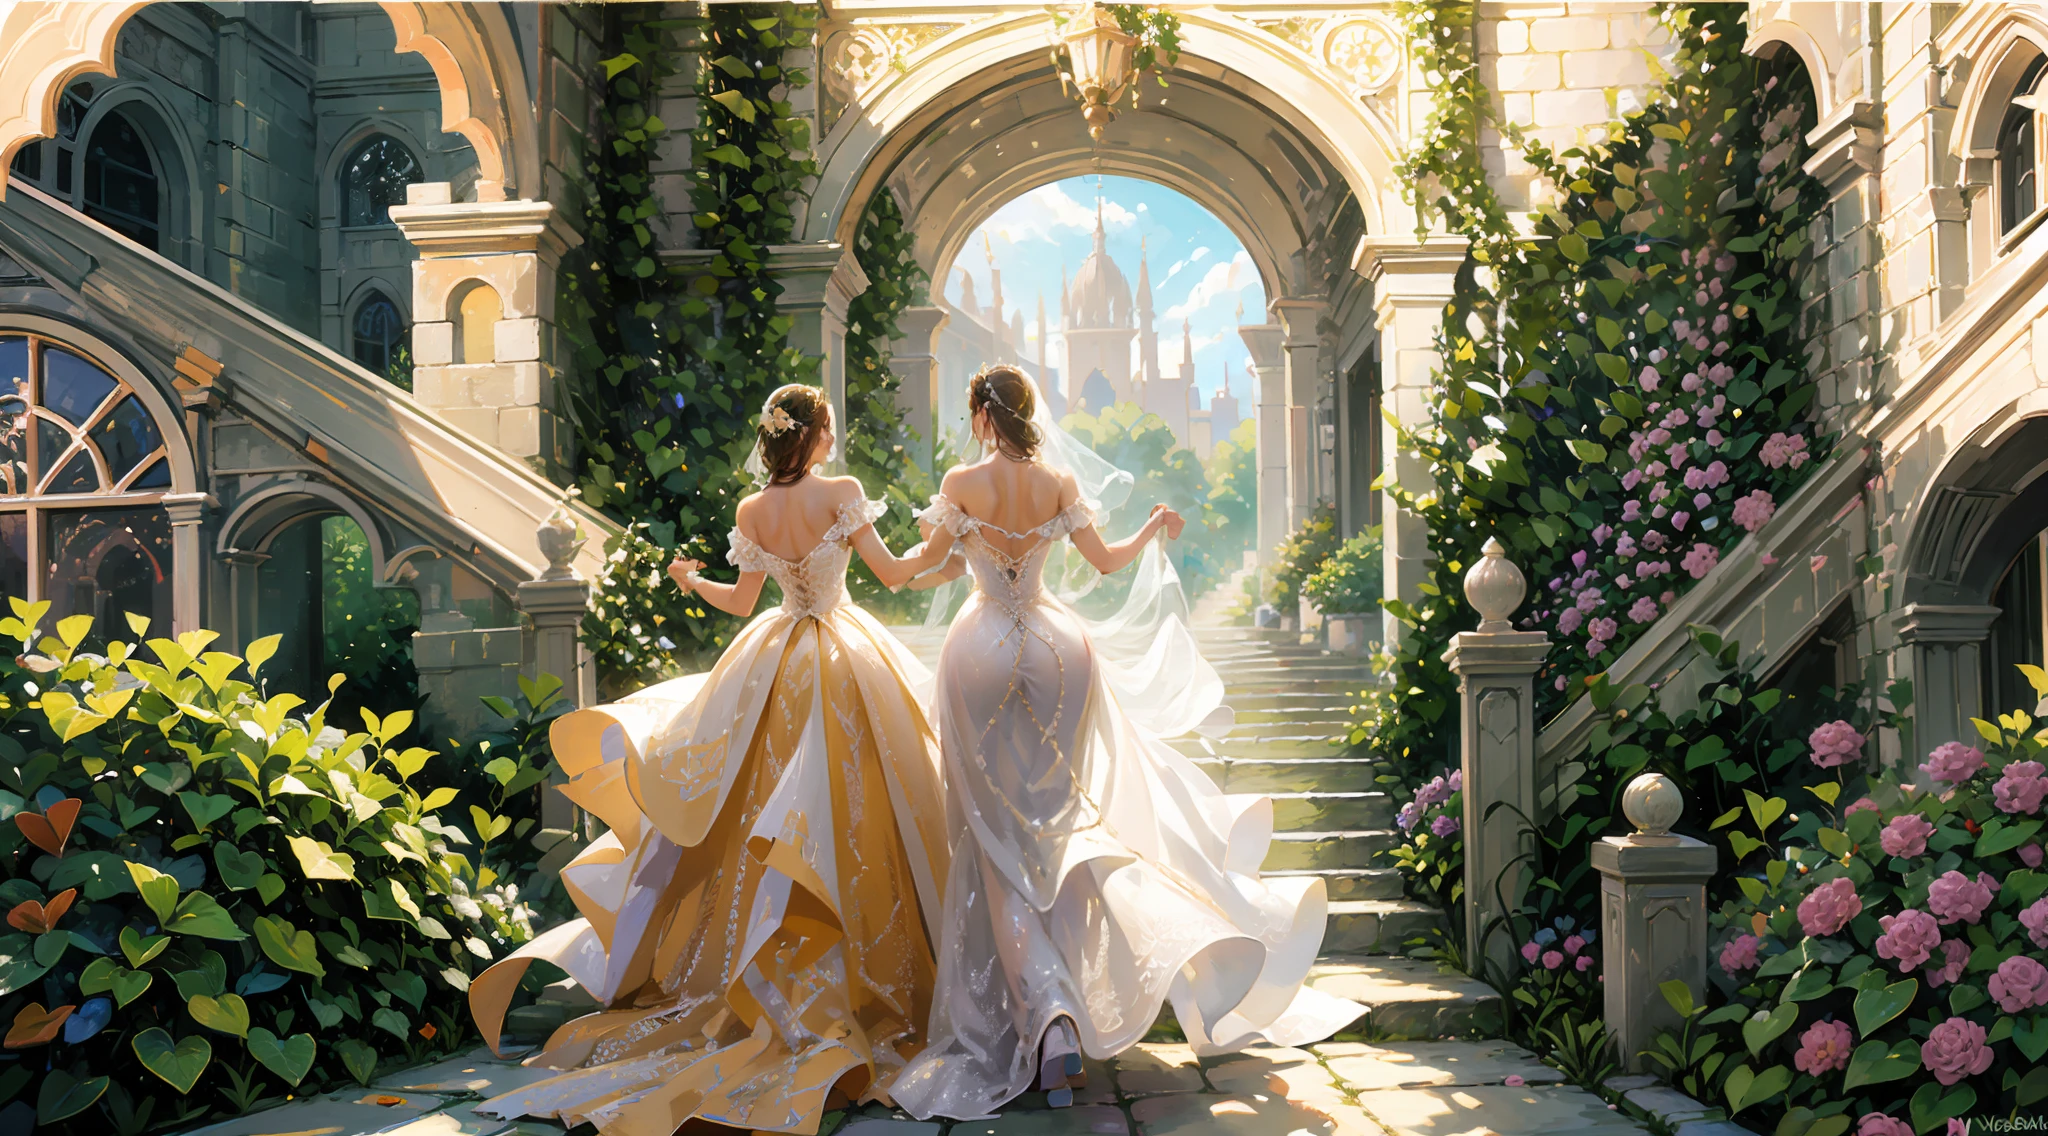 웨딩 프린세스 드레스, 뒷모습, 정원, 계단, 즐겁고 행복한 결혼식, 생동감 넘치는 무지개로 장식된. 로맨틱 커플